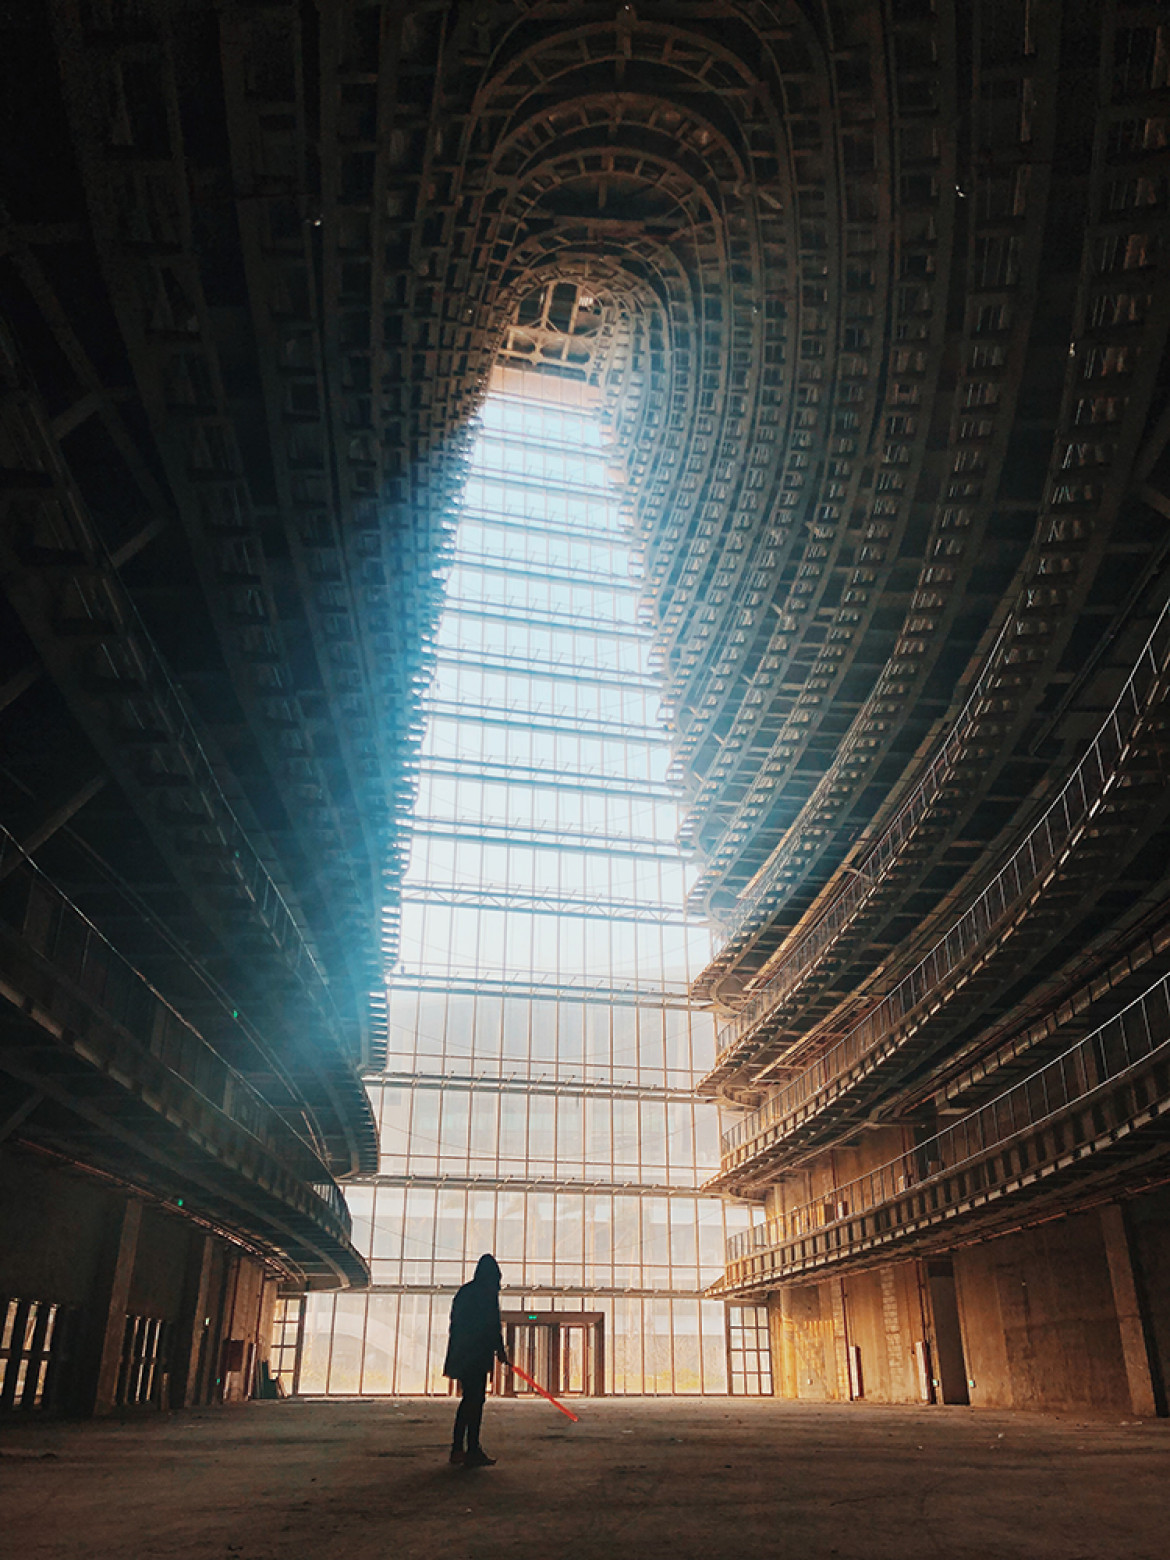 fot. Shuo Chen, "Here I Come", 3. miejsce w kategorii Architecture / IPPA 2019